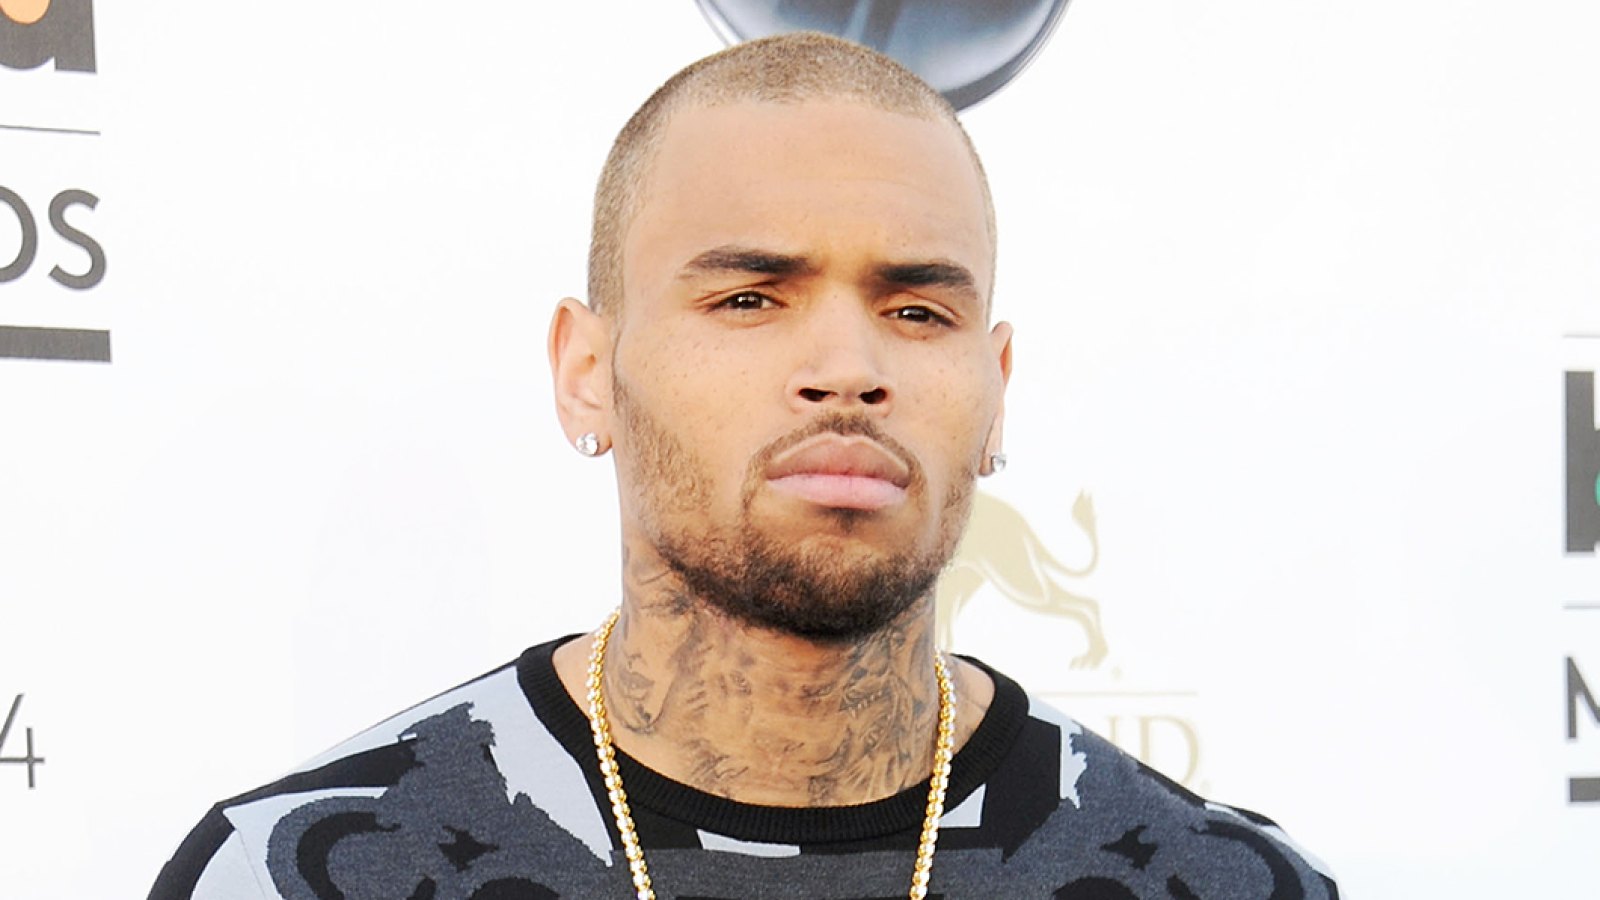 Chris Brown sued